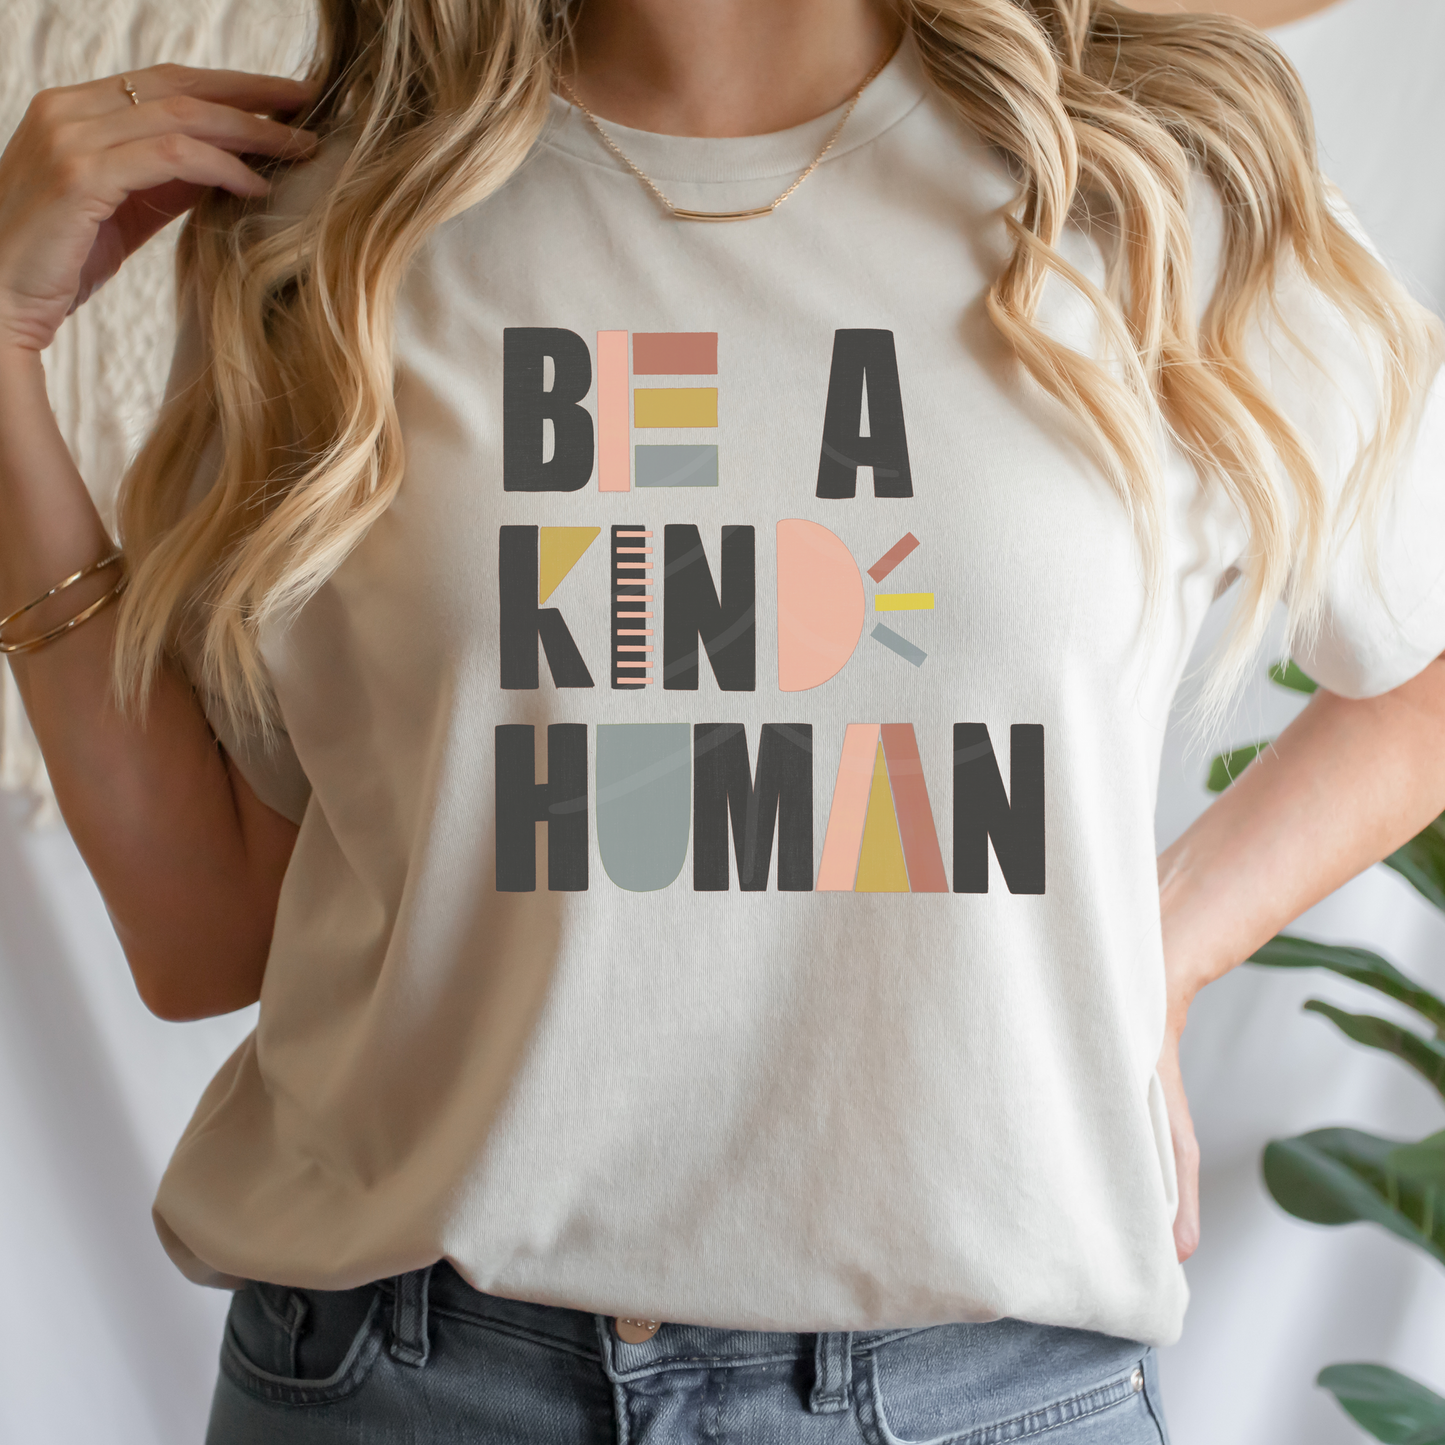 BE A KIND HUMAN